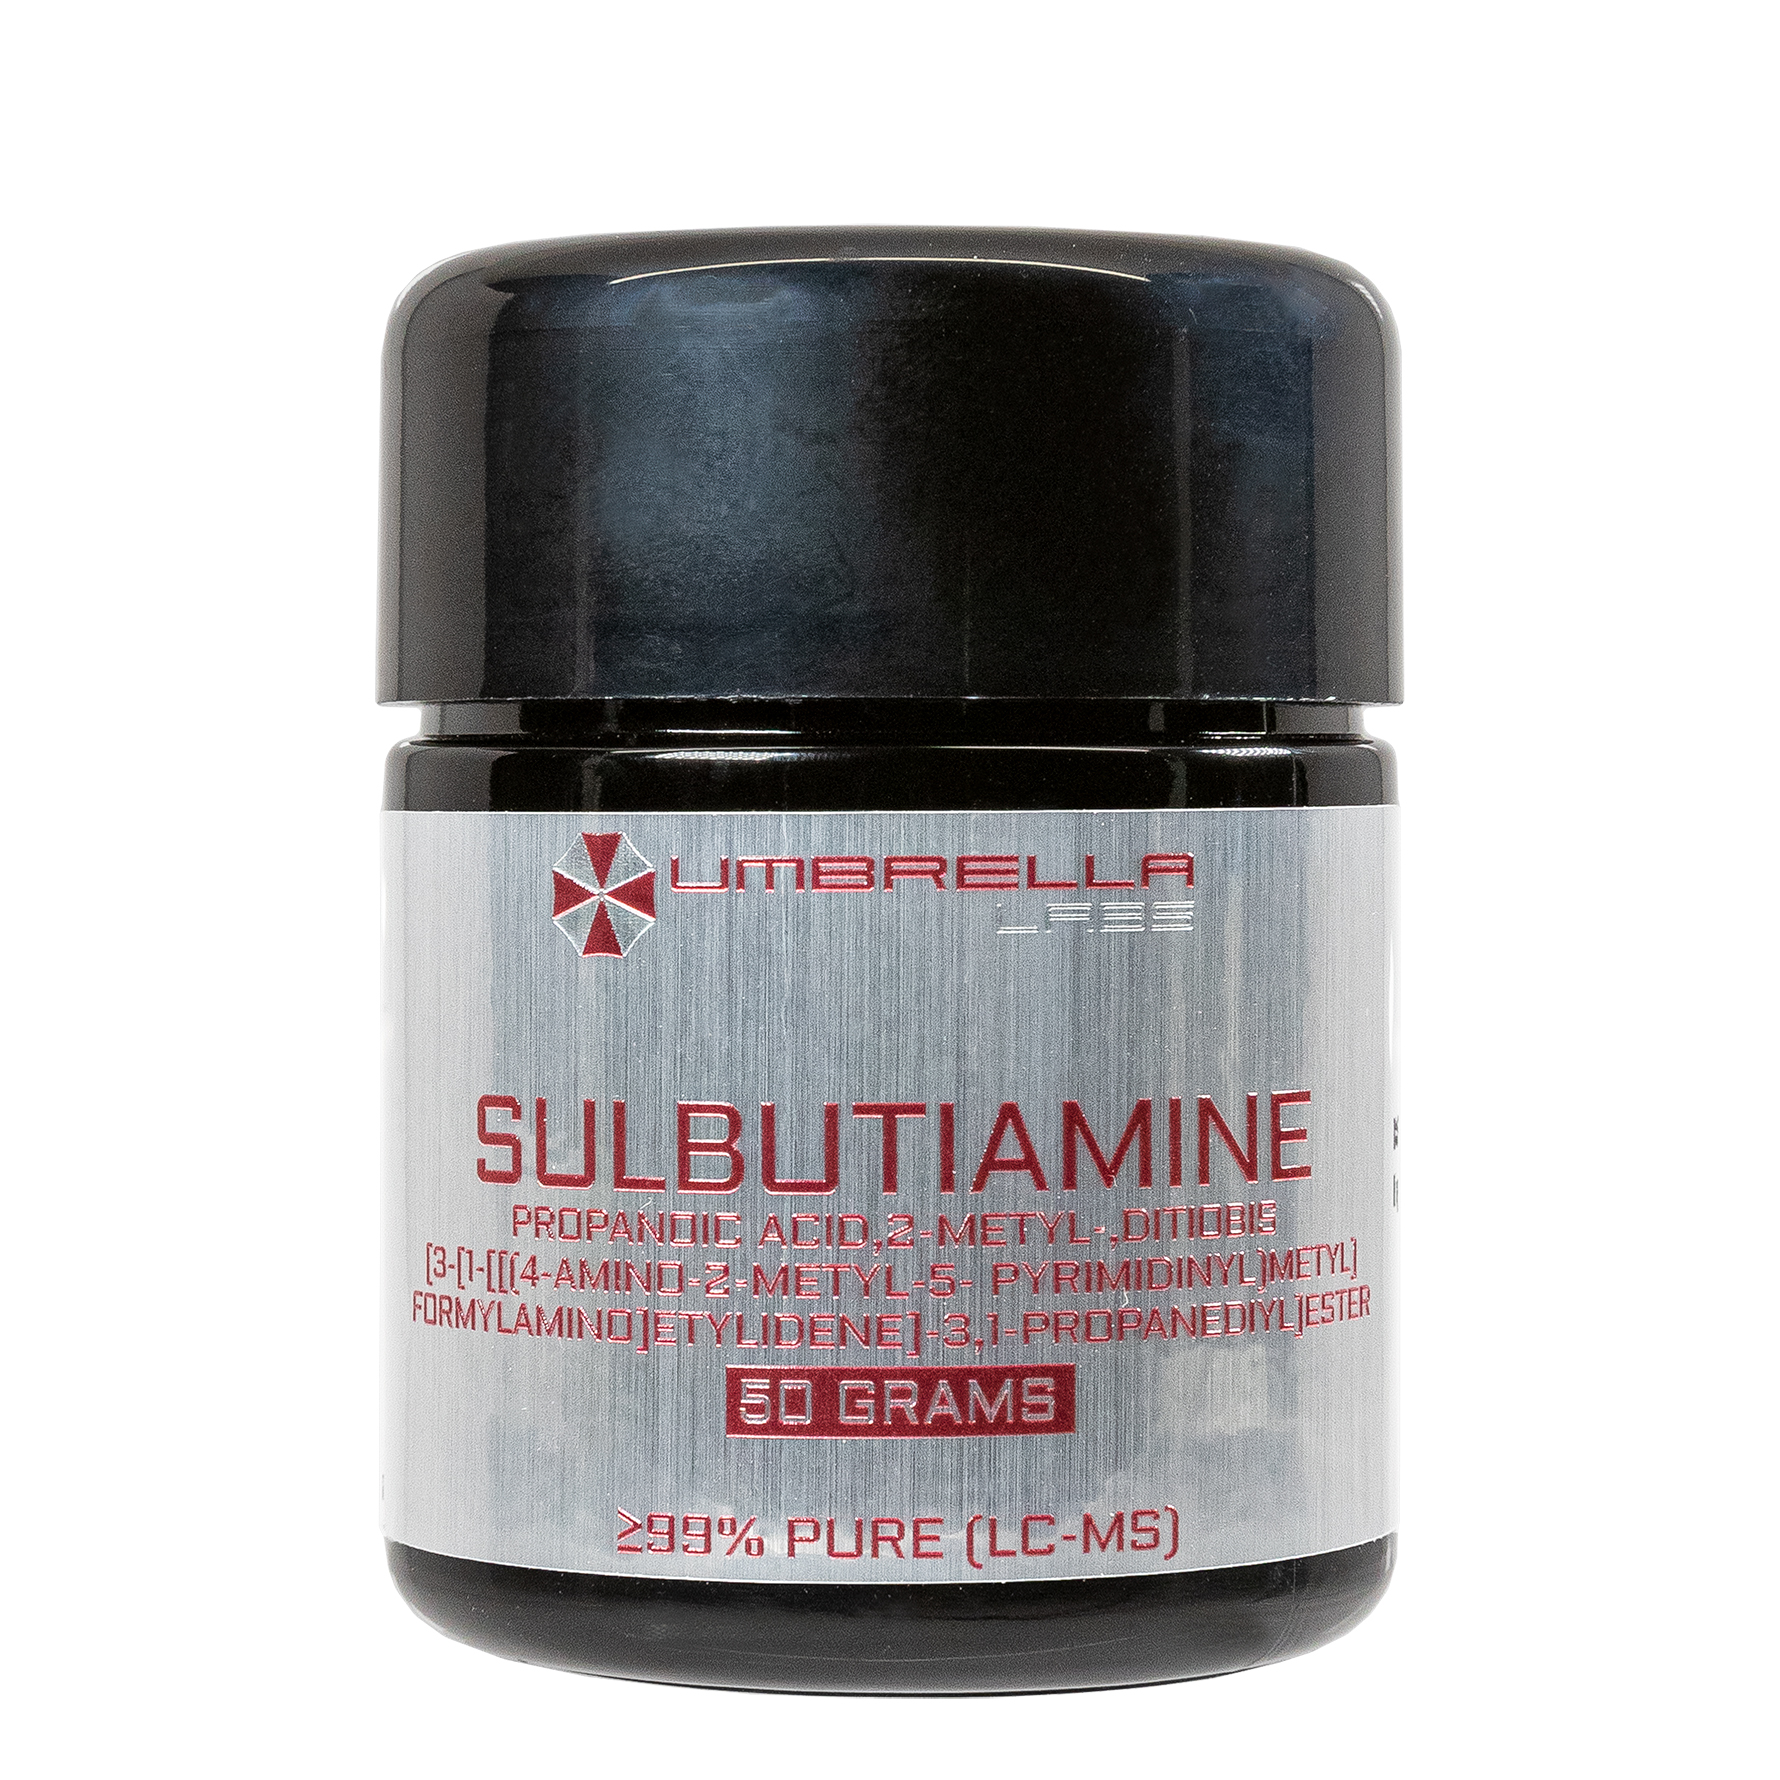 Pure Sulbutiamine For Sale